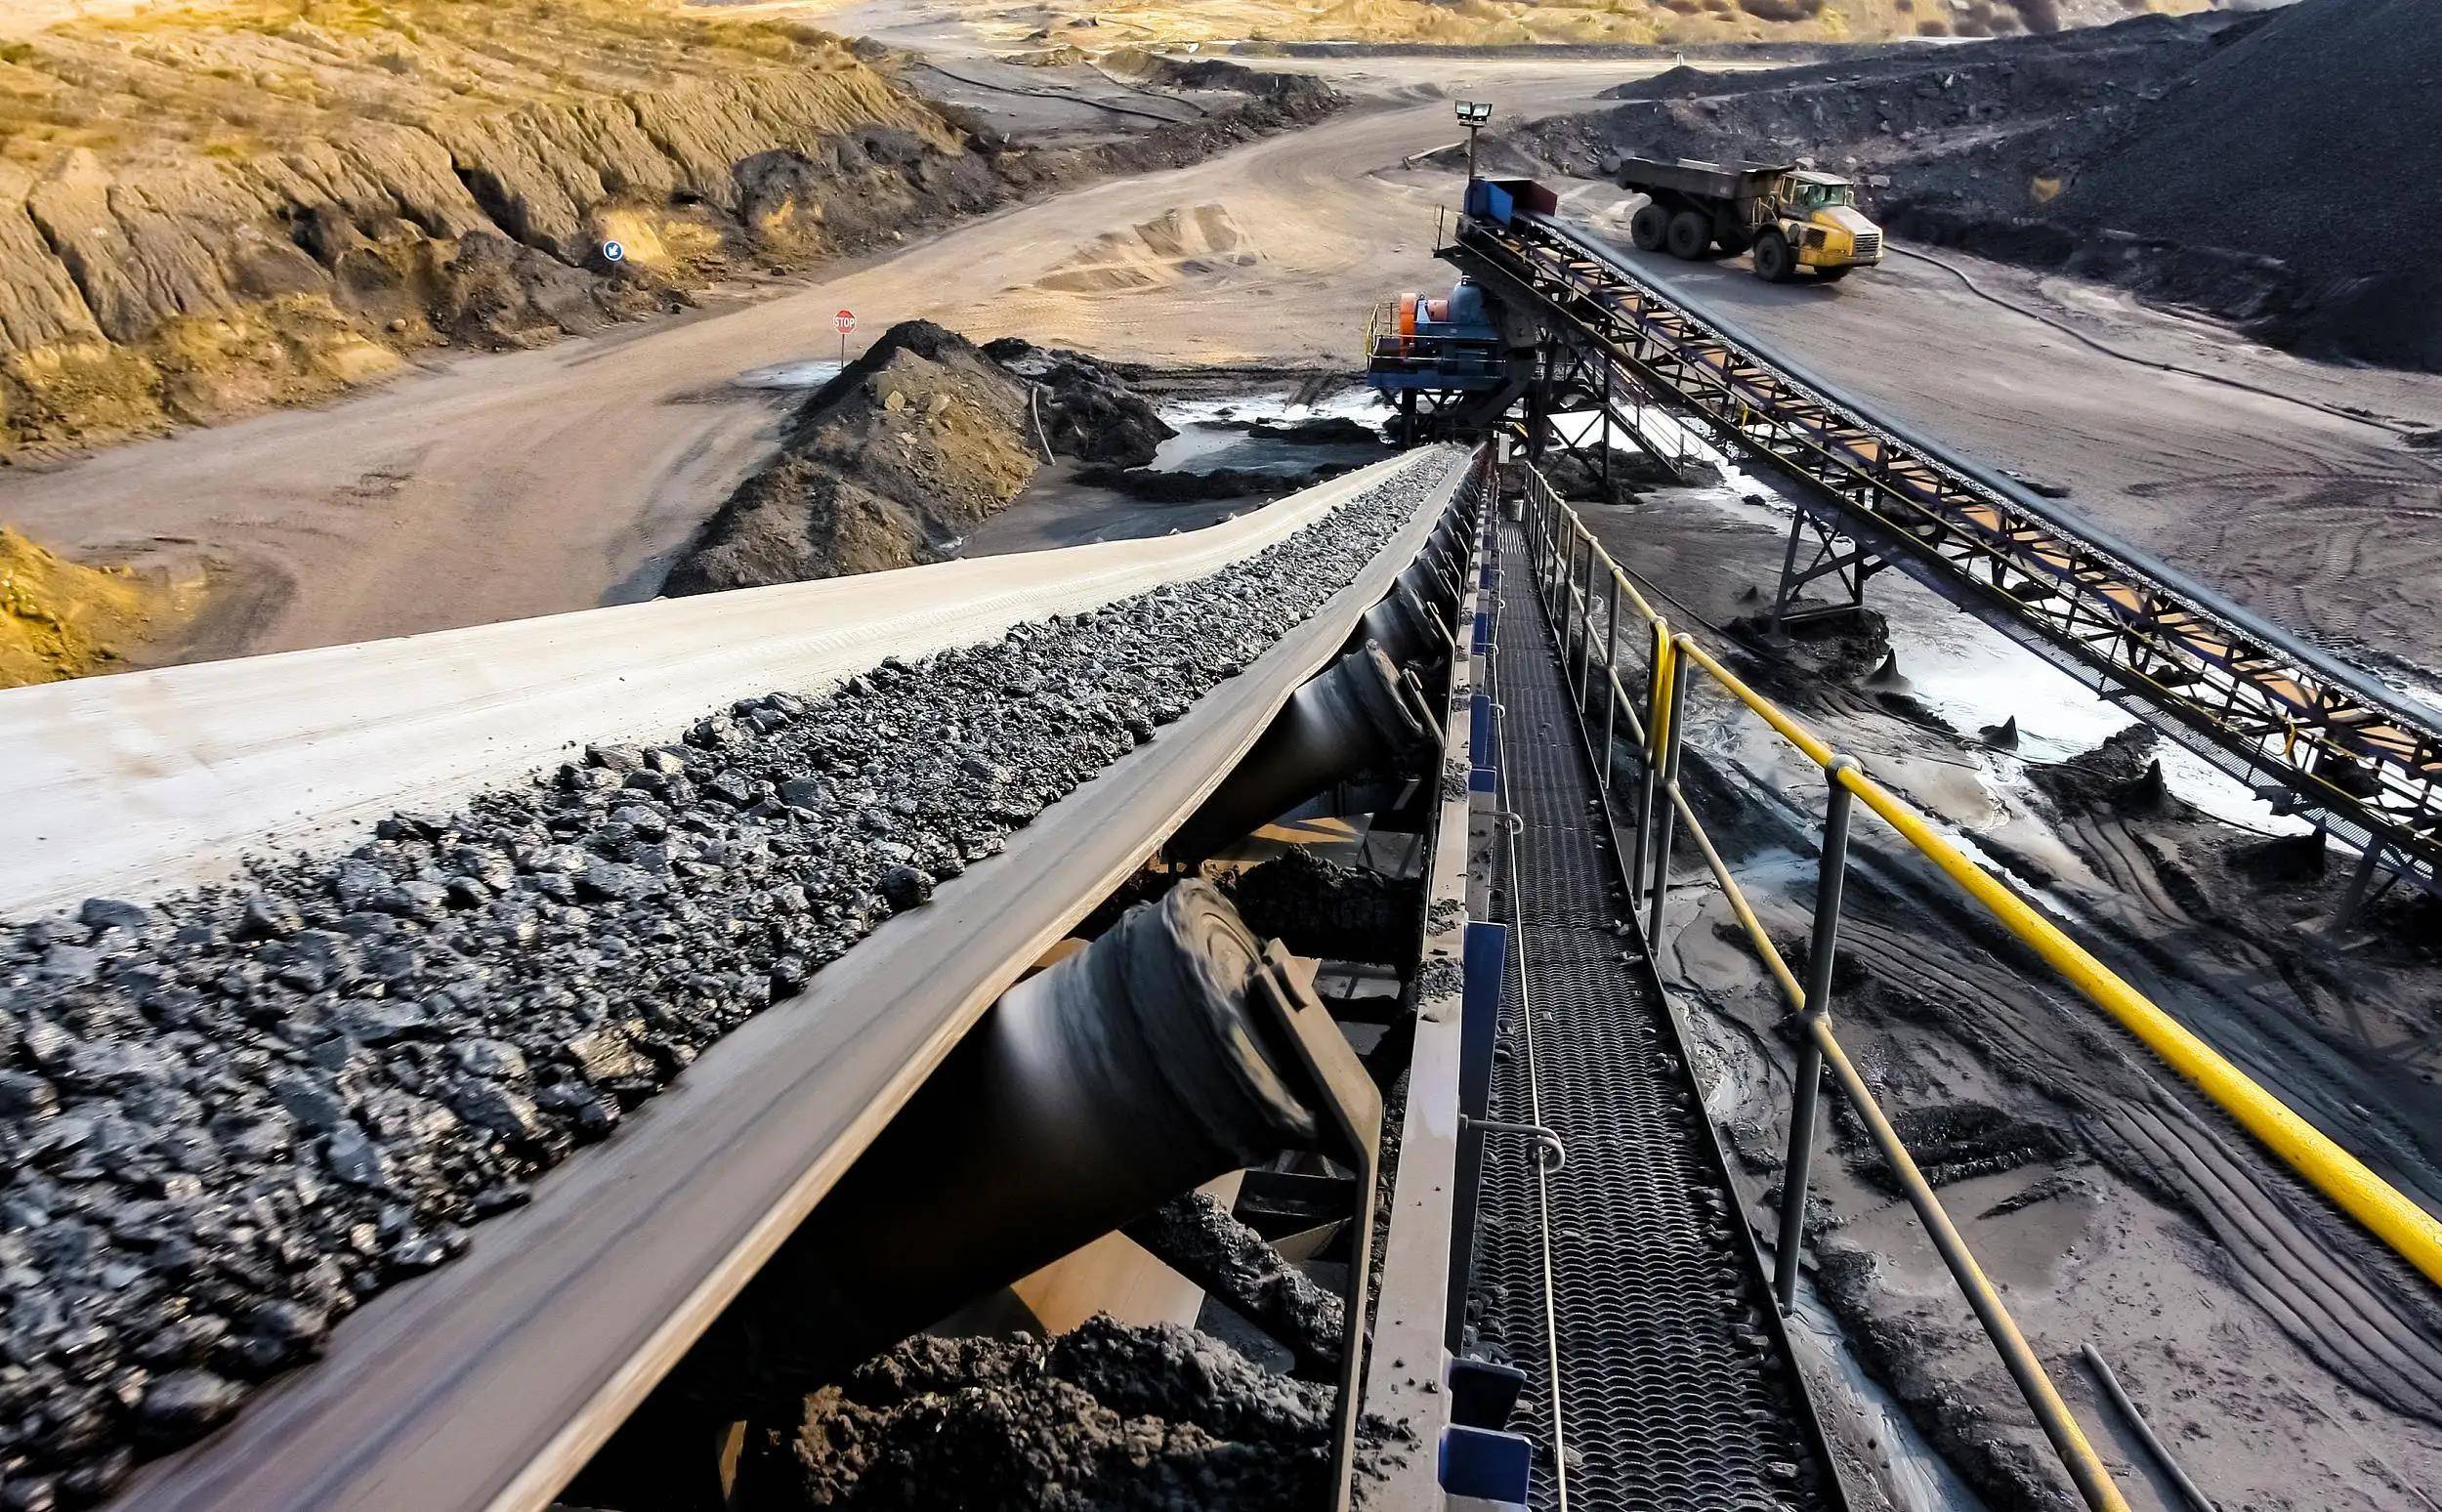  晋能控股煤业集团四台矿深挖降本潜力 激活提质增效动能